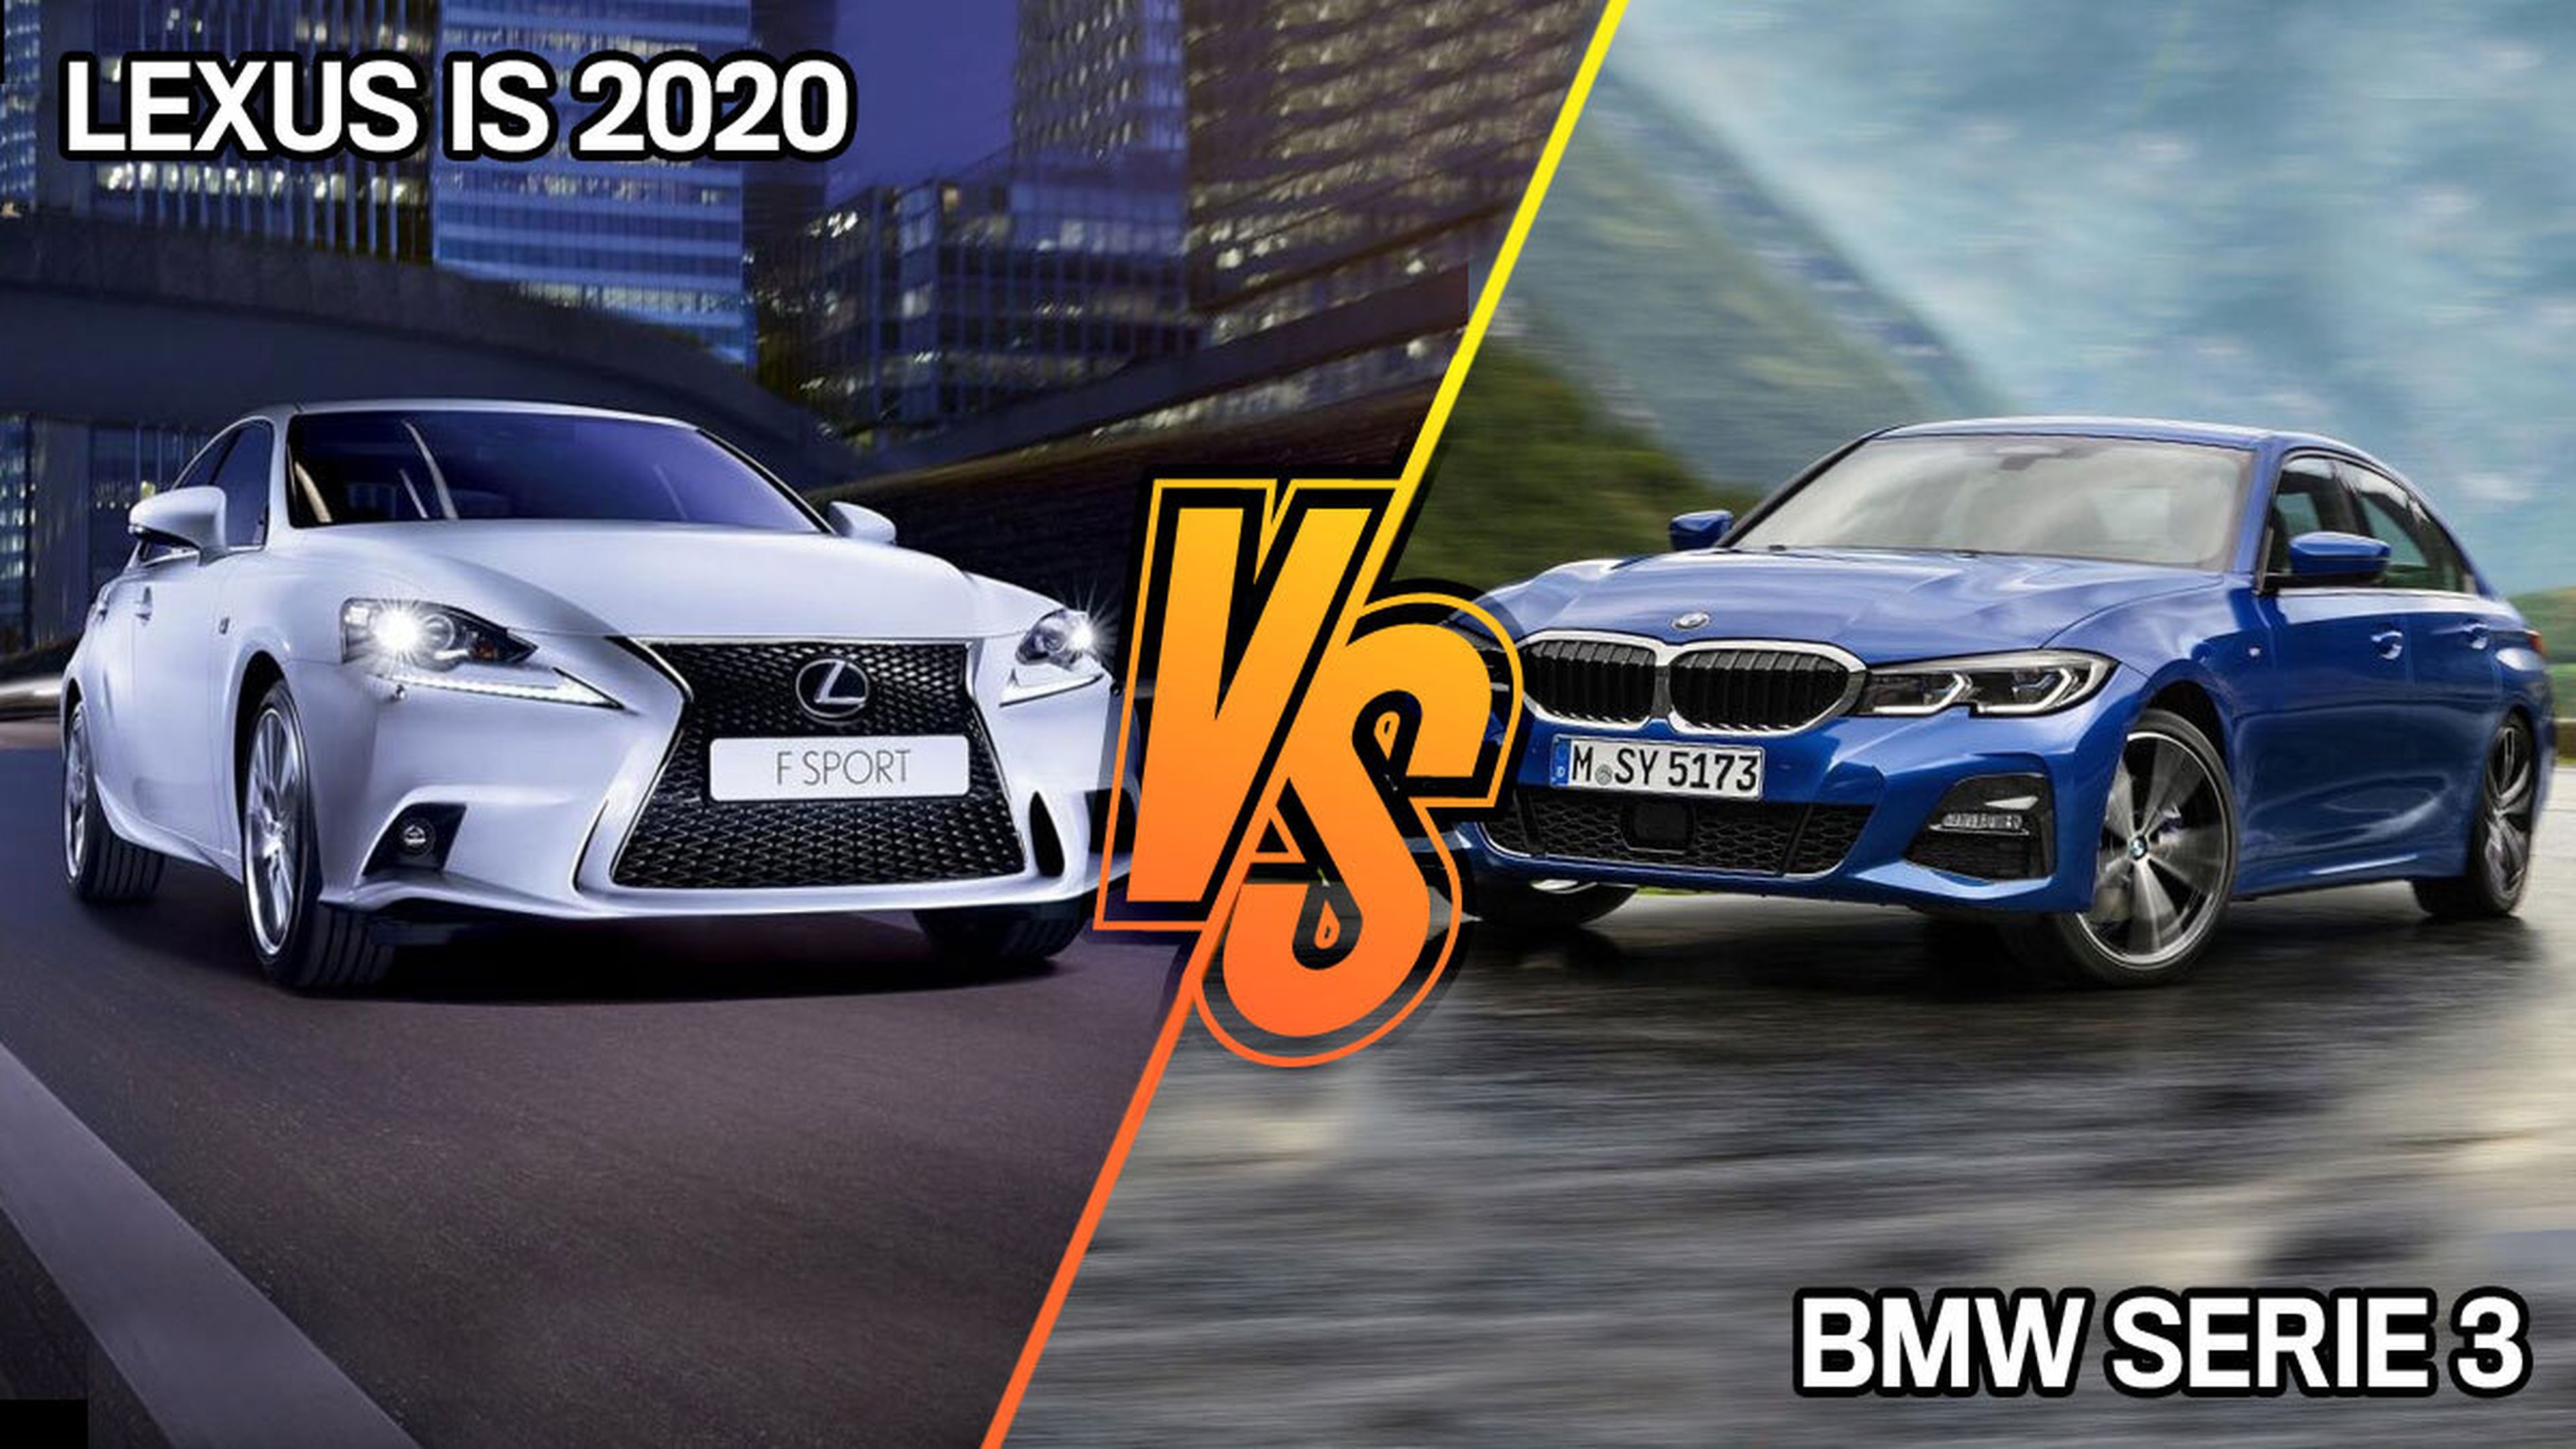 BMW Serie 3 o Lexus IS 2020, ¿Cuál comprar?